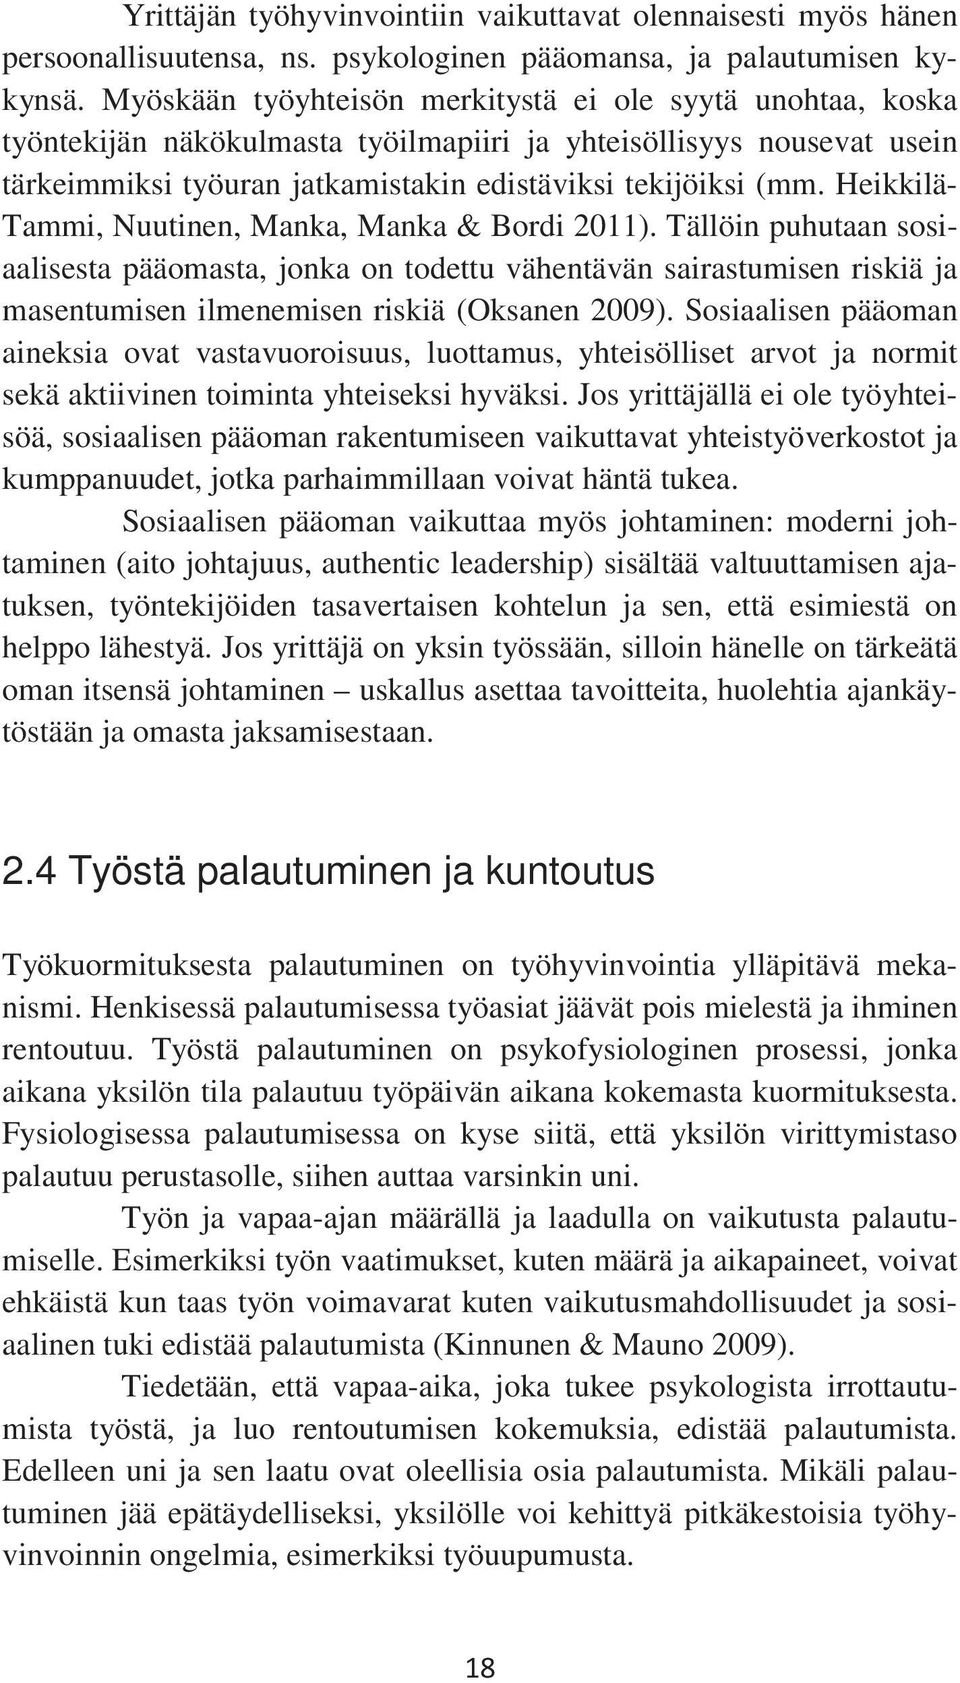 Heikkilä- Tammi, Nuutinen, Manka, Manka & Bordi 2011). Tällöin puhutaan sosiaalisesta pääomasta, jonka on todettu vähentävän sairastumisen riskiä ja masentumisen ilmenemisen riskiä (Oksanen 2009).